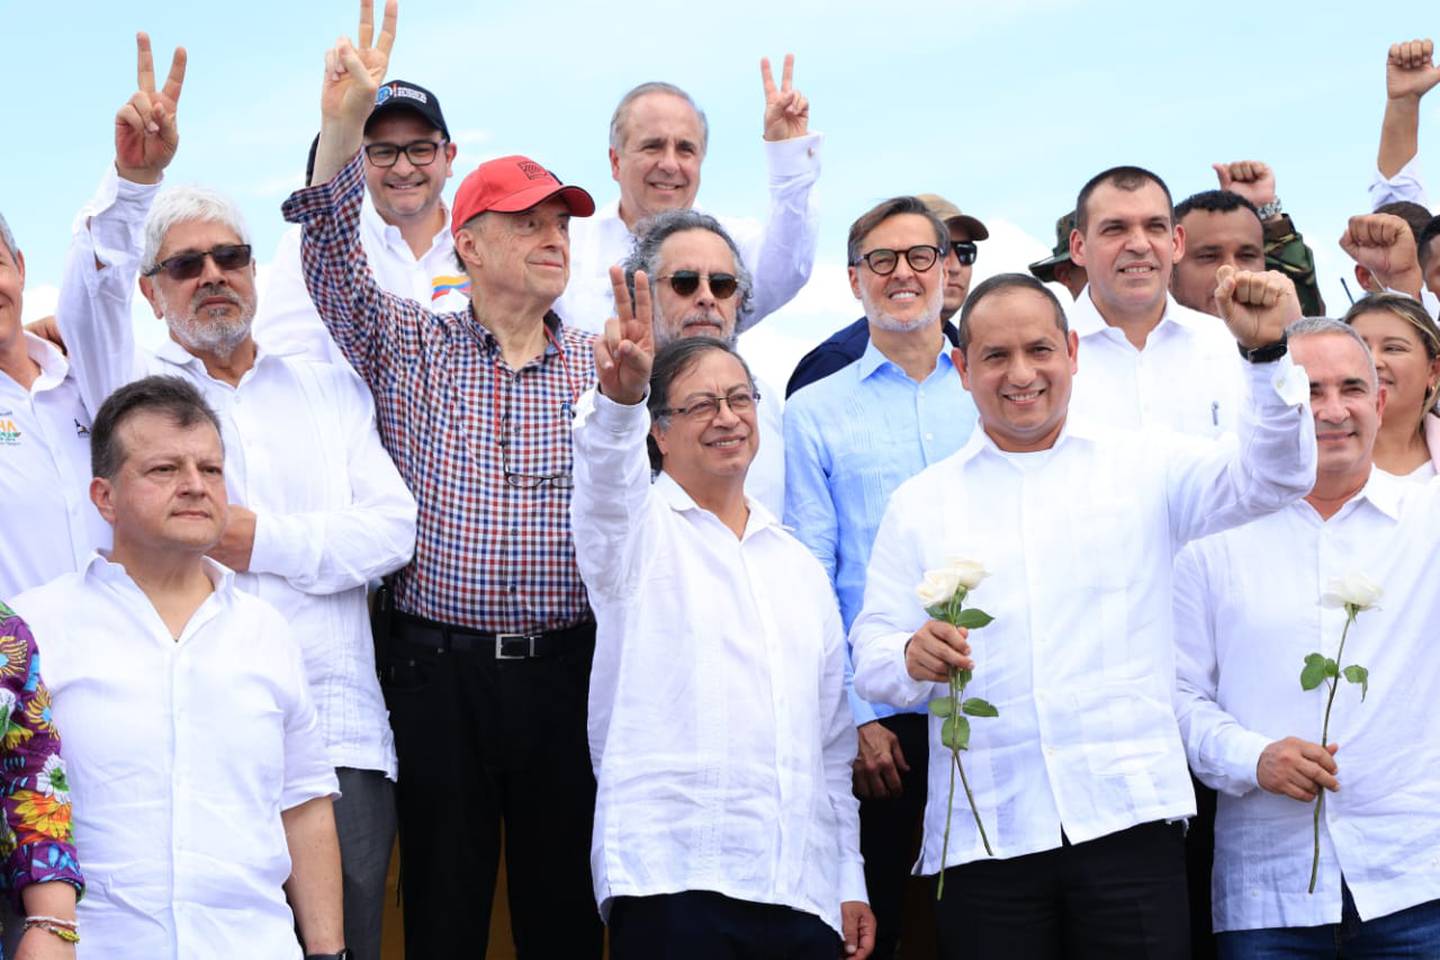 El presidente Gustavo Petro intervino luego de la reapertura de la frontera este lunes.dfd